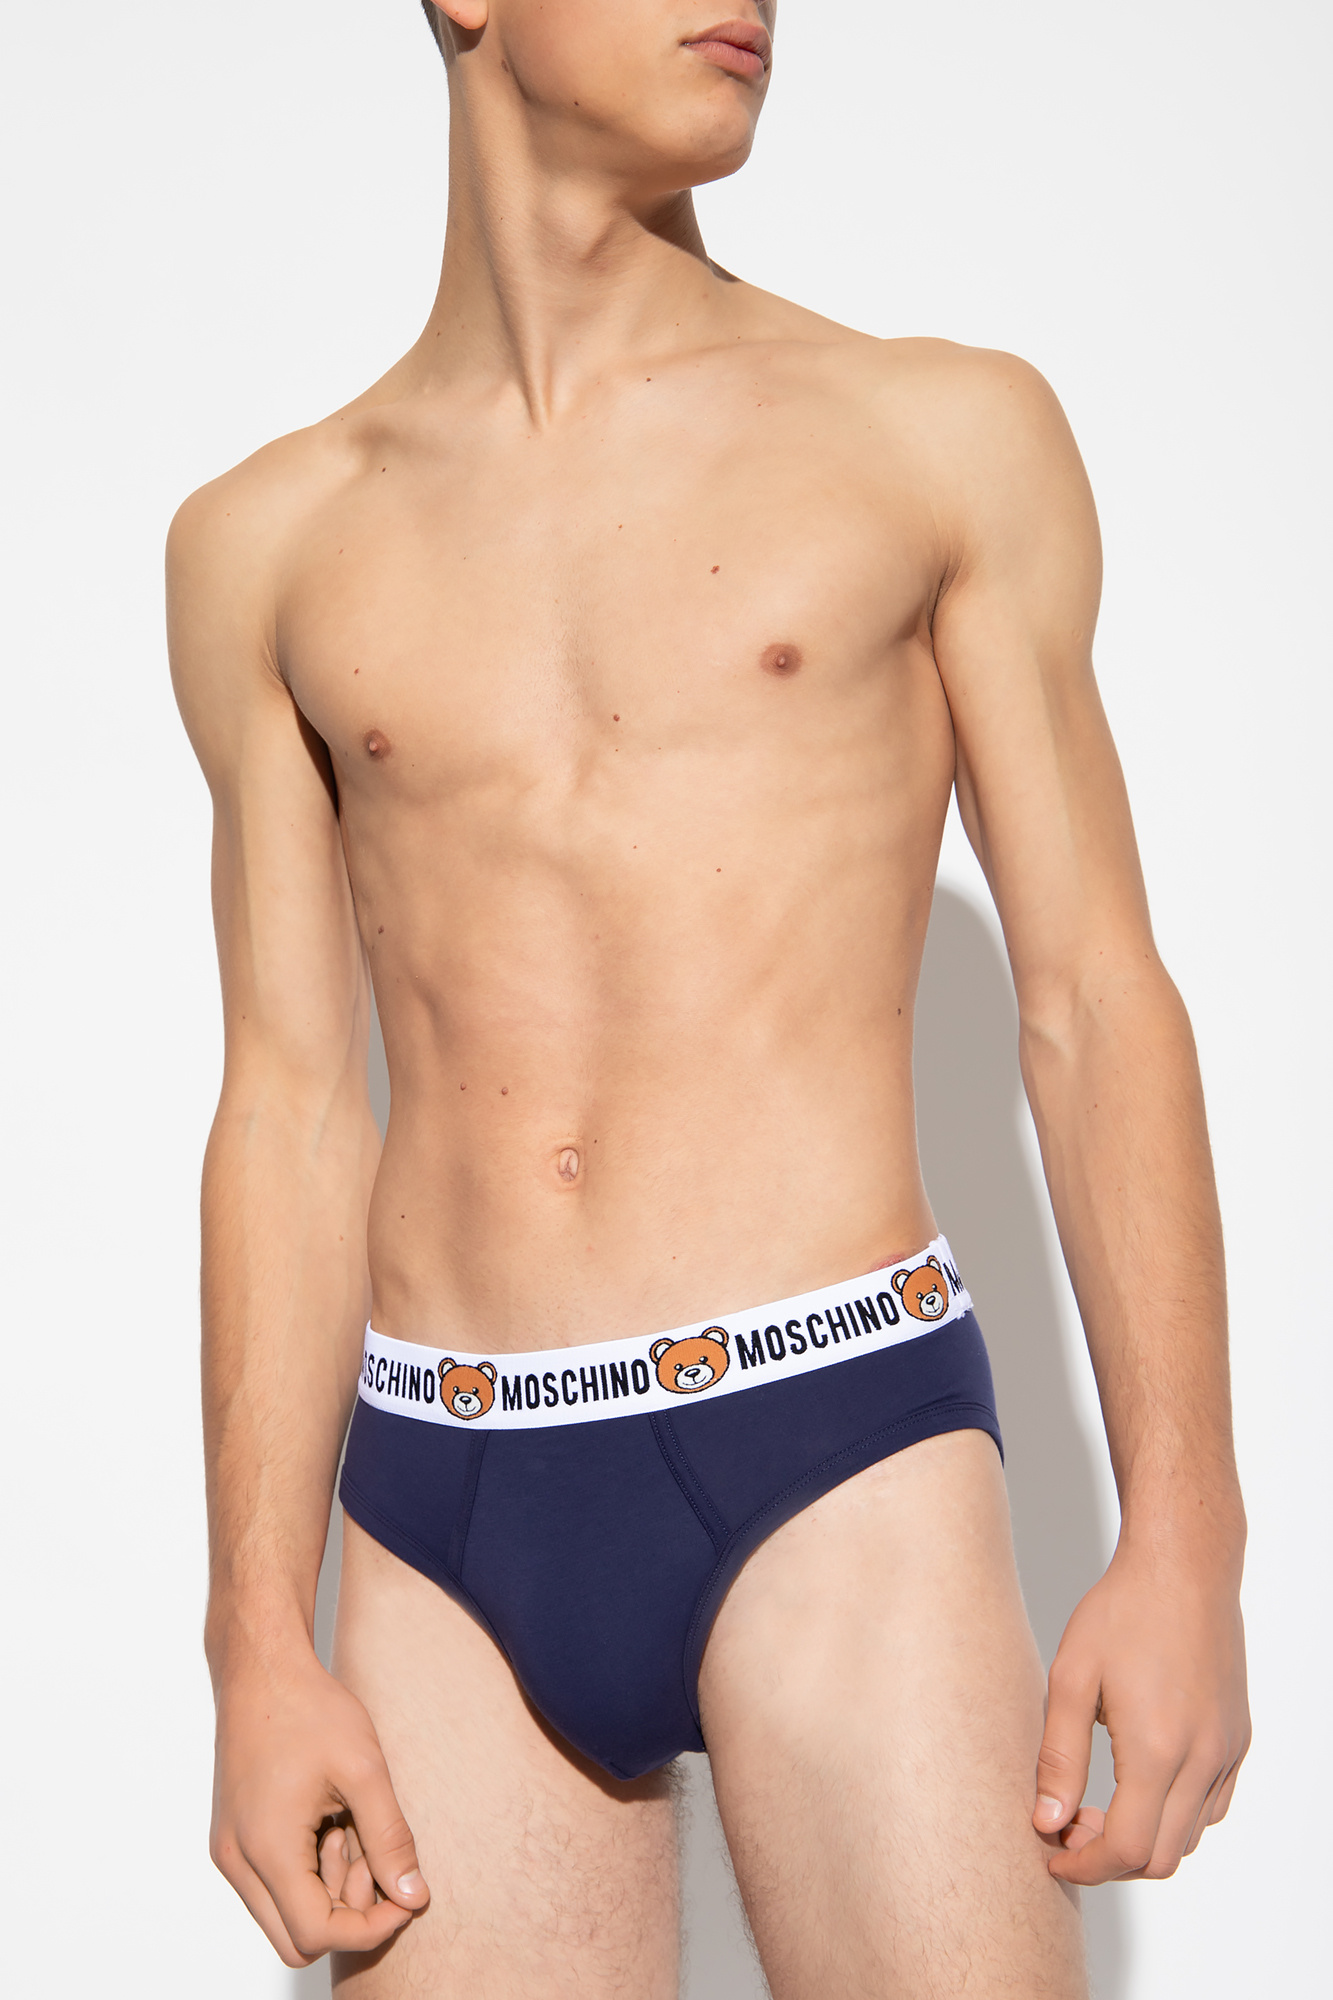 Moschino Underwear - Briefs for Man - White - V1A138843010001